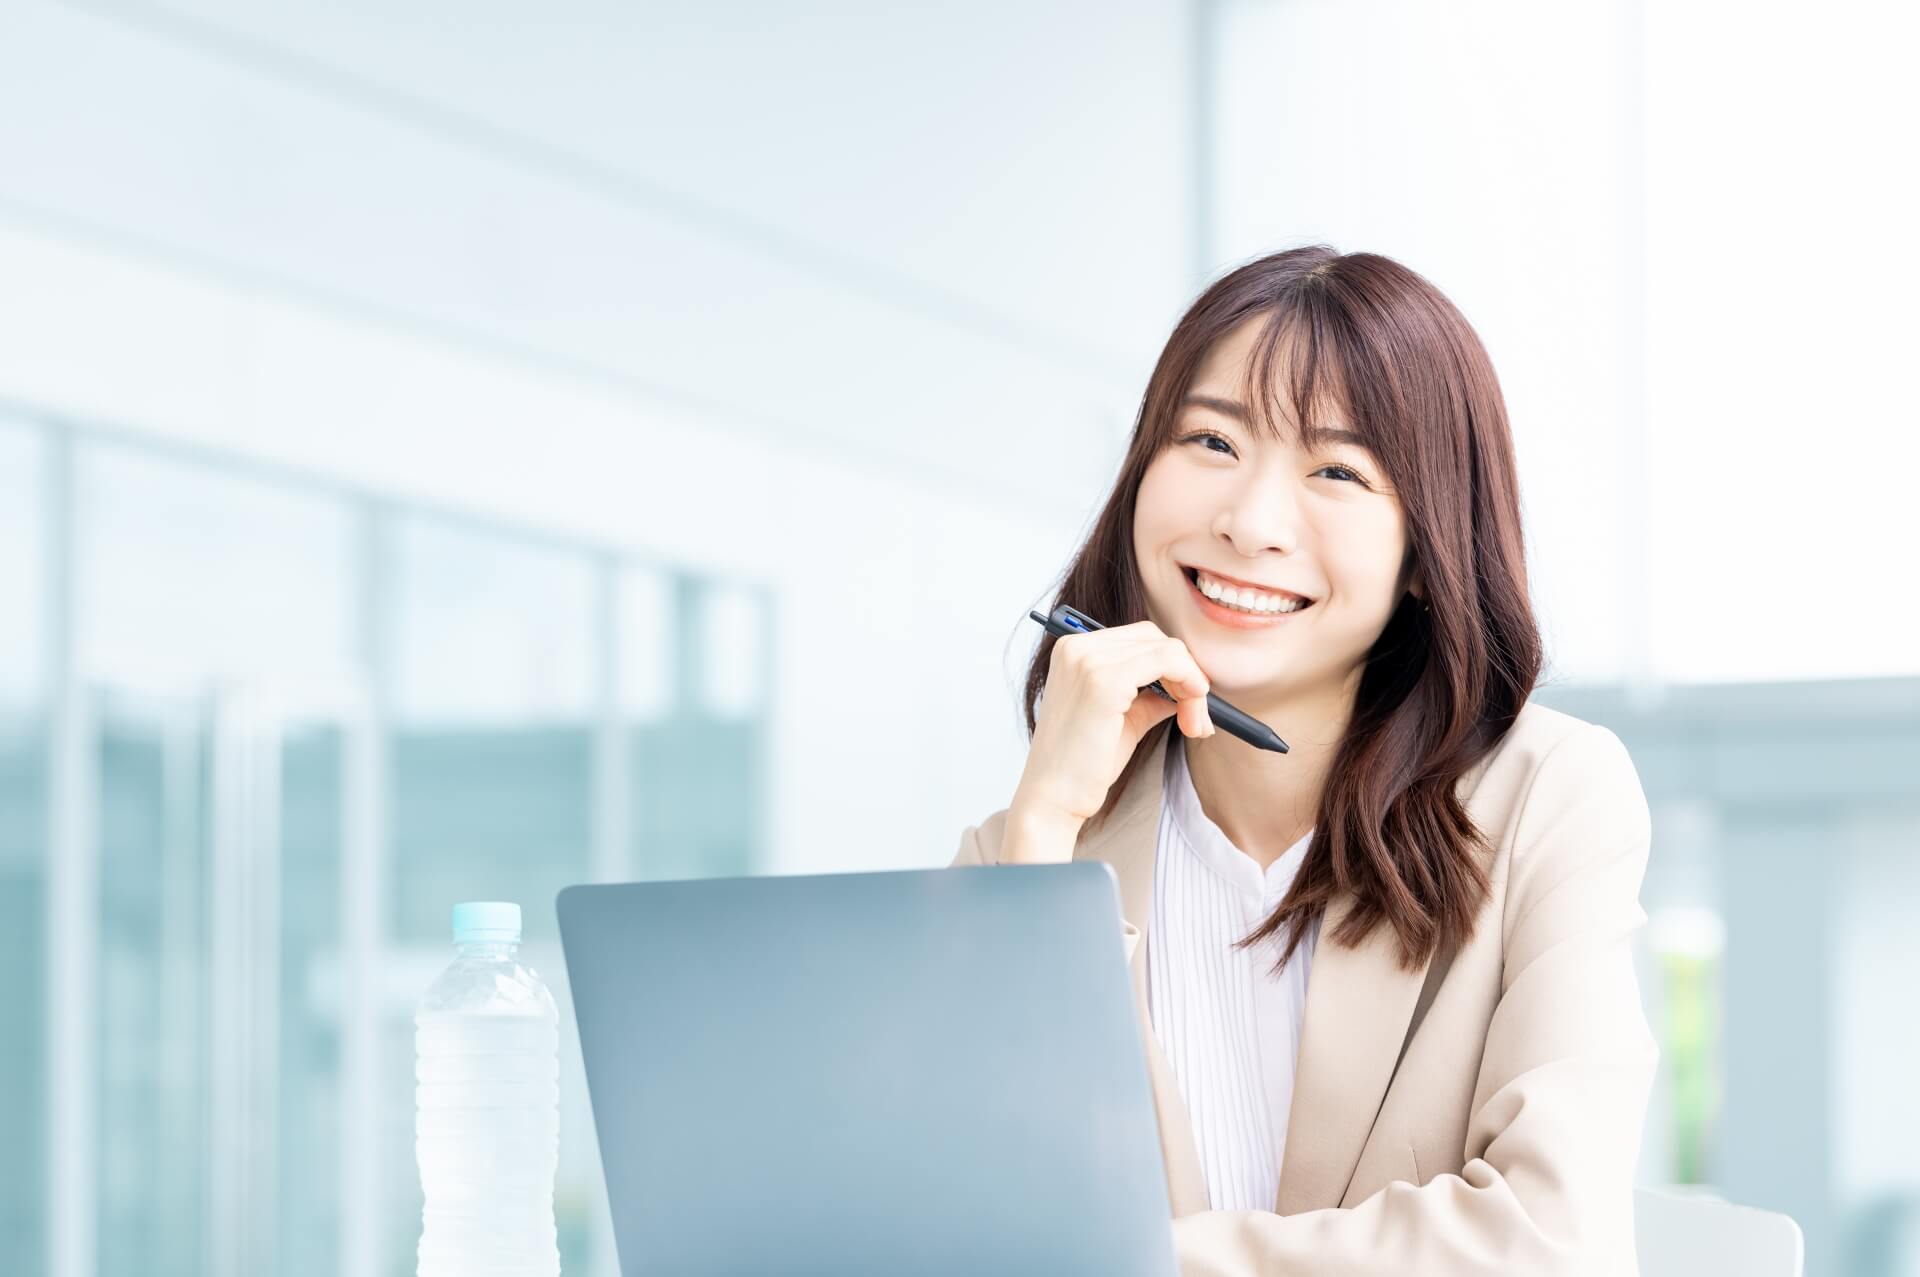 ノートパソコンの前で笑顔を浮かべている女性の画像